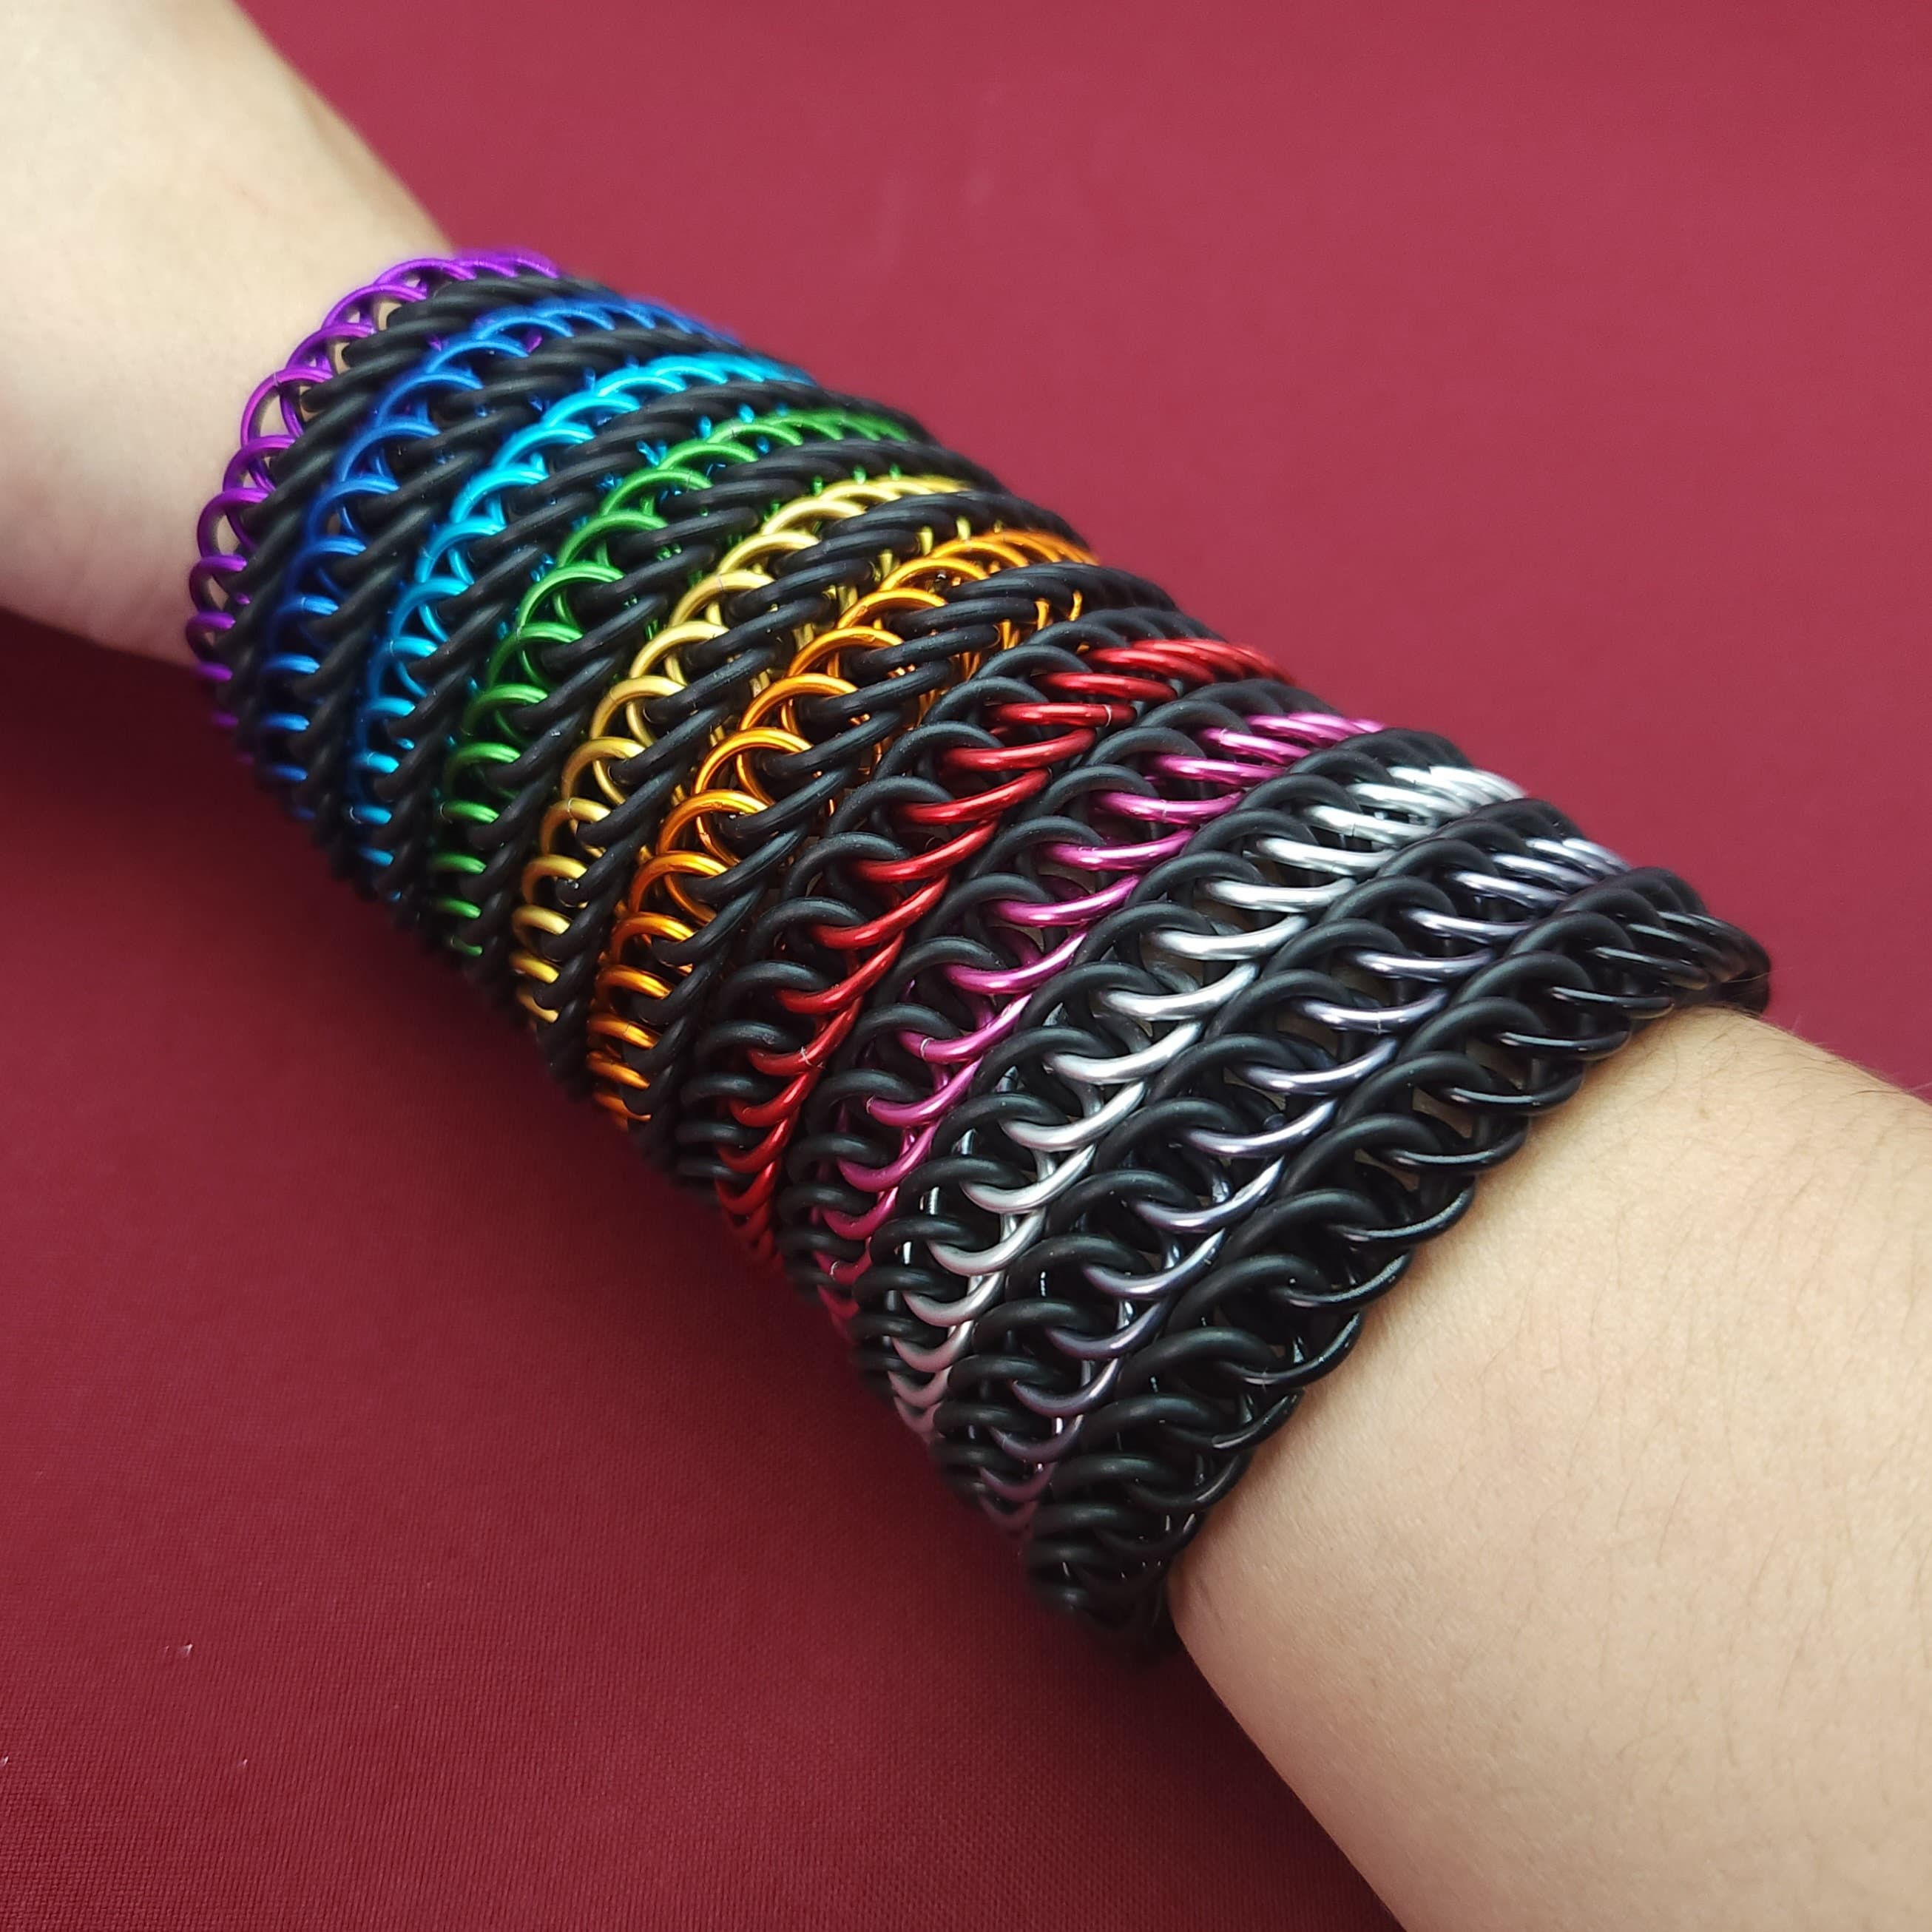 The Joy DIY Stretchy Bracelet Rainbow Jewelry Making Bead Kit for